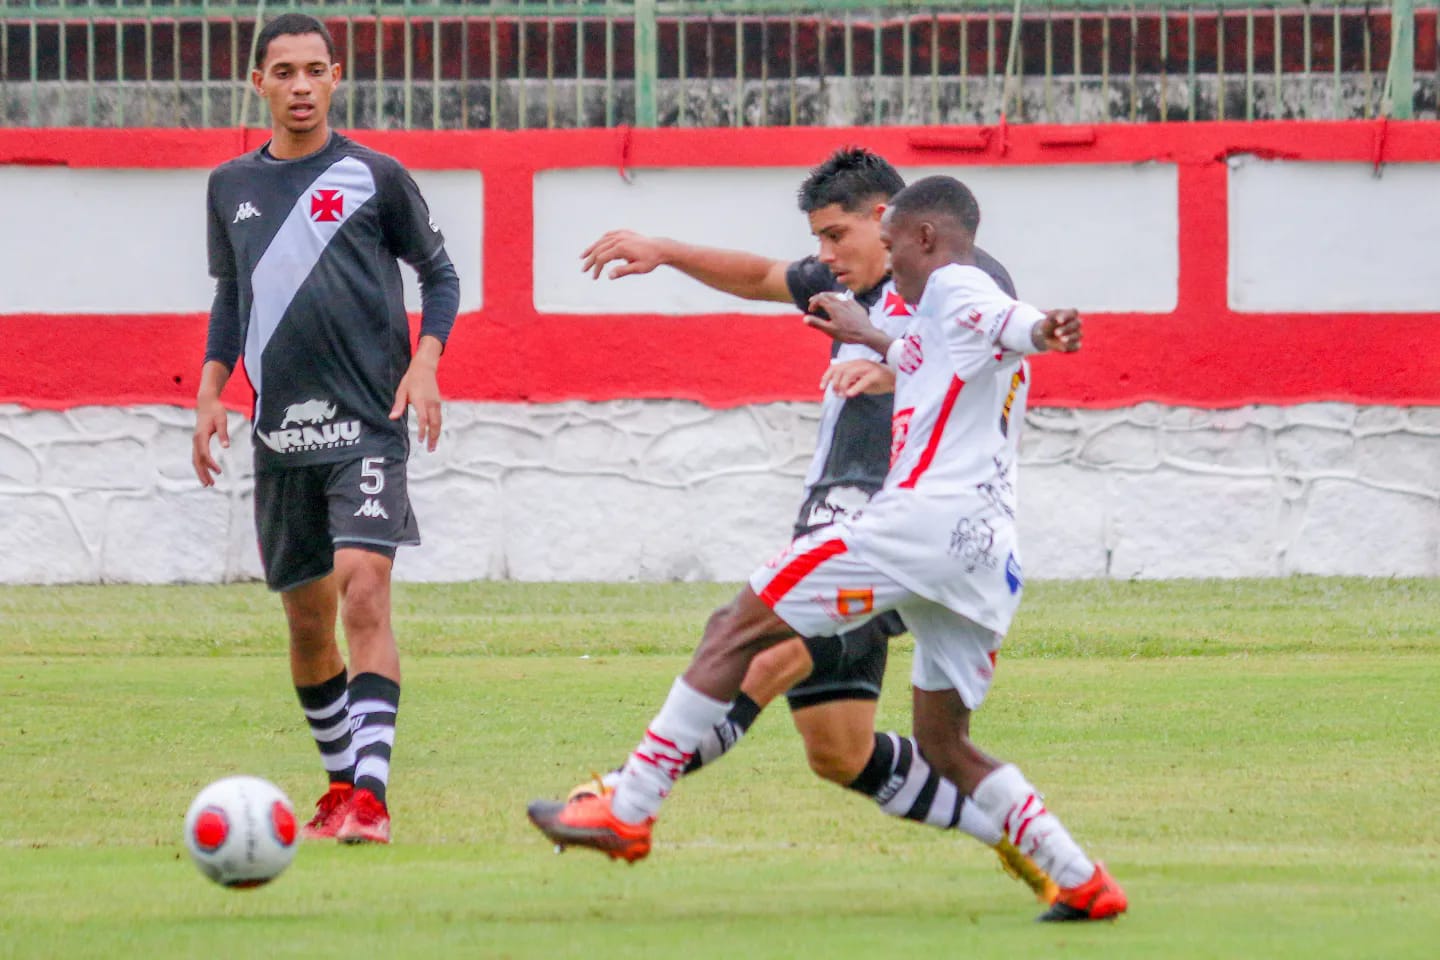 Bangu e Vasco empatam na ida das quartas do Carioca Sub-20